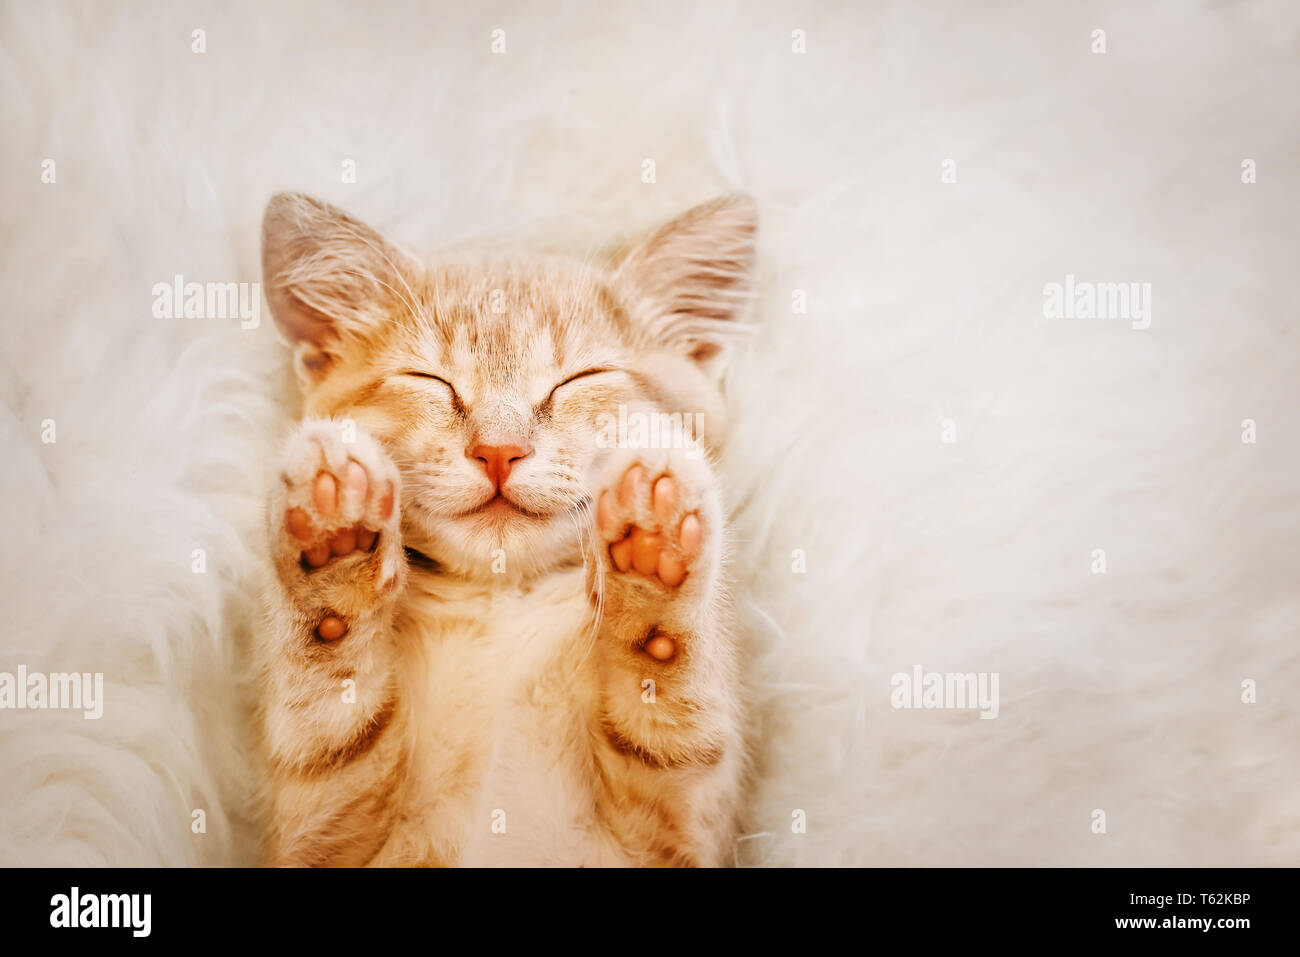 Mignon, chaton rouge est en train de dormir sur son dos et souriant, les pieds vers le haut. Concept de sommeil et bon matin. Banque D'Images